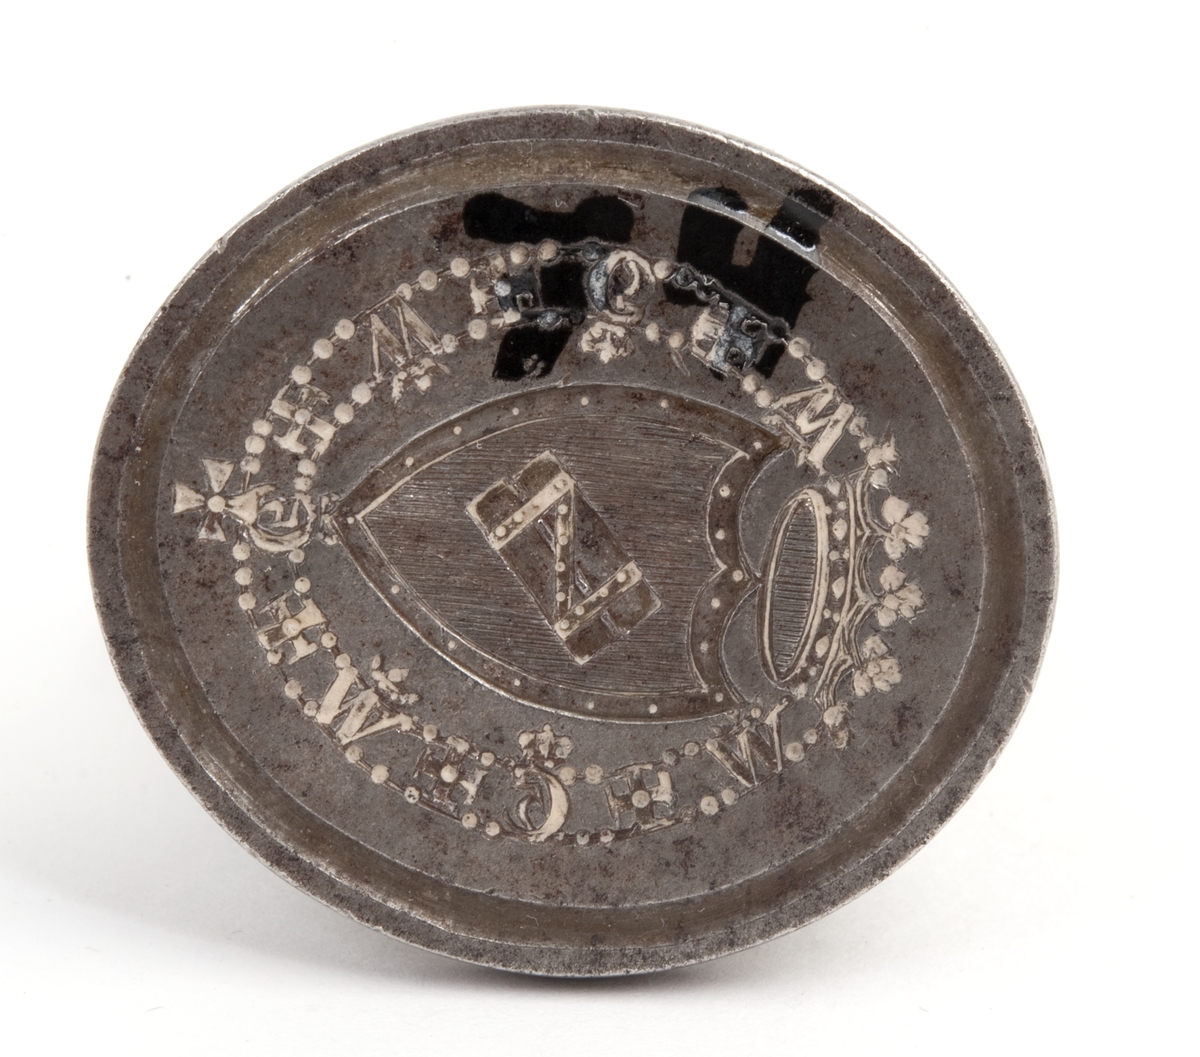 Stempelet har form som et skjold.
Krone øverst, bord med bokstaver rundt, ovalt håndtak med enkel utsmykning.
Efter General Haxthausen.